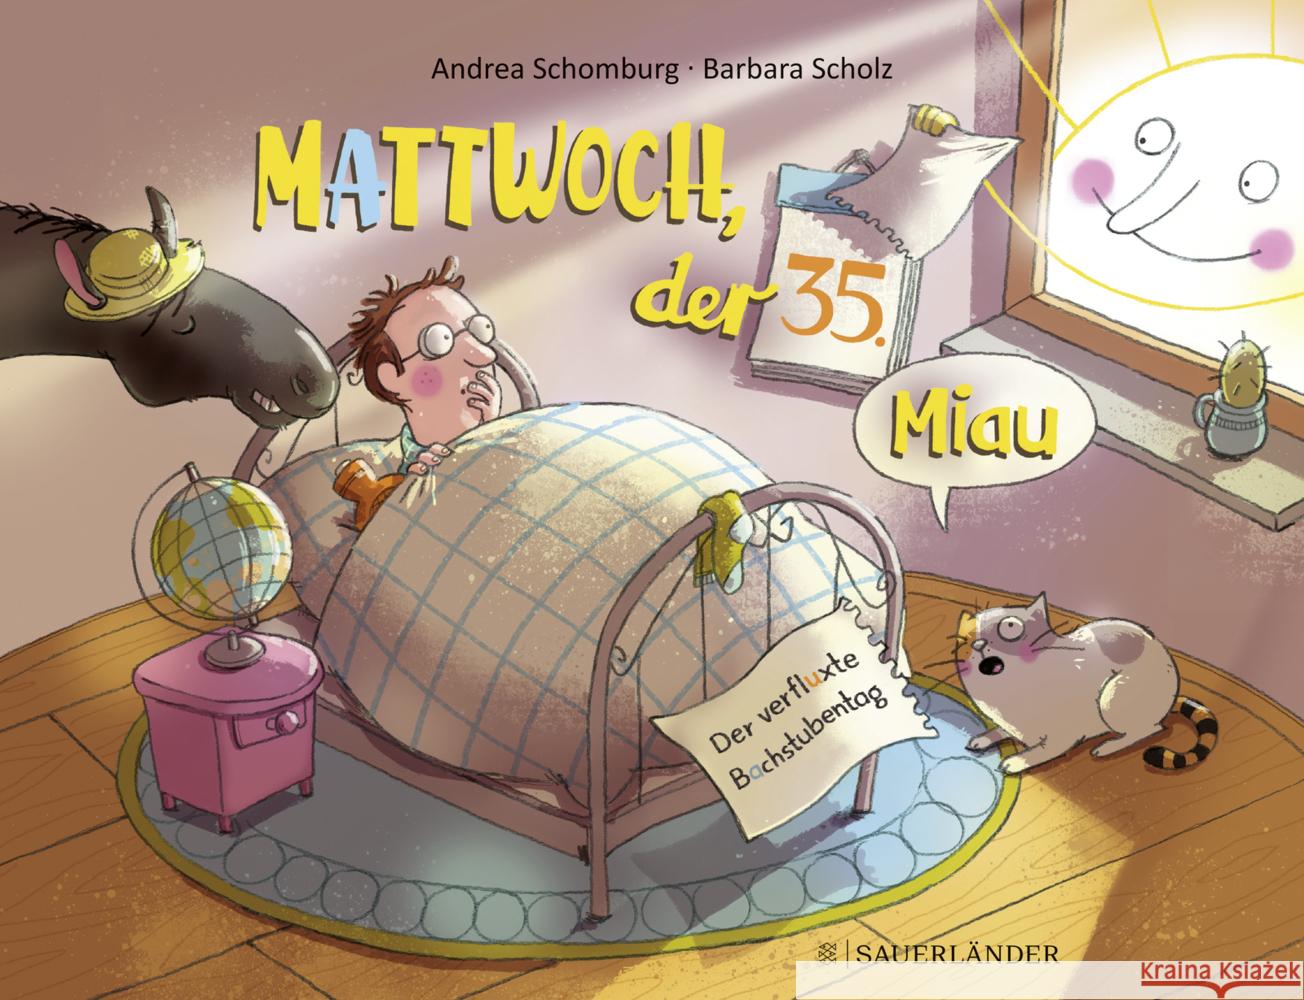 Mattwoch, der 35. Miau Schomburg, Andrea 9783737357715 FISCHER Sauerländer - książka